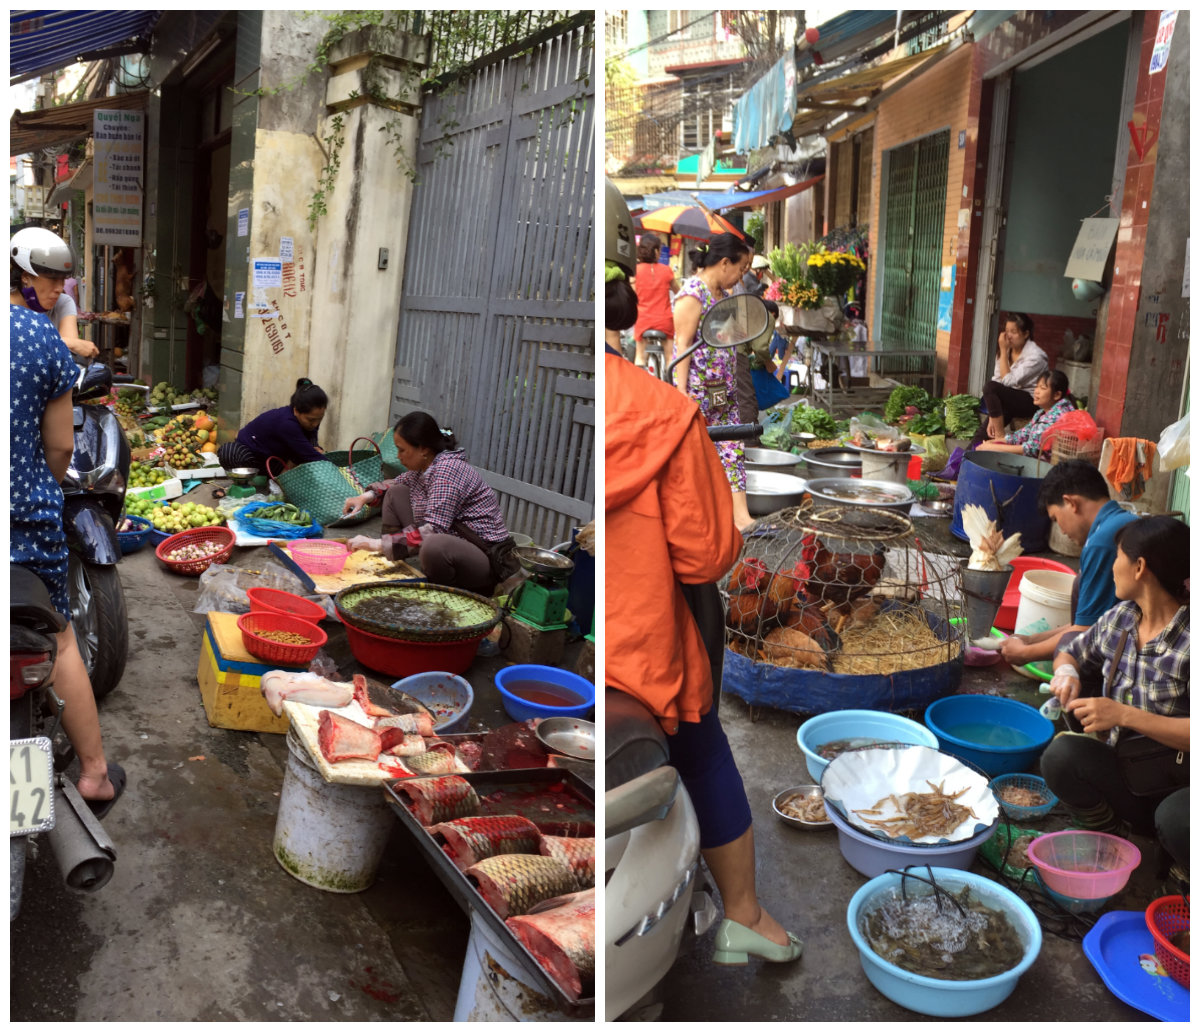 Lo bão số 10 gây mưa lớn ngập úng, người dân Hà Nội mua lương thực dự trữ